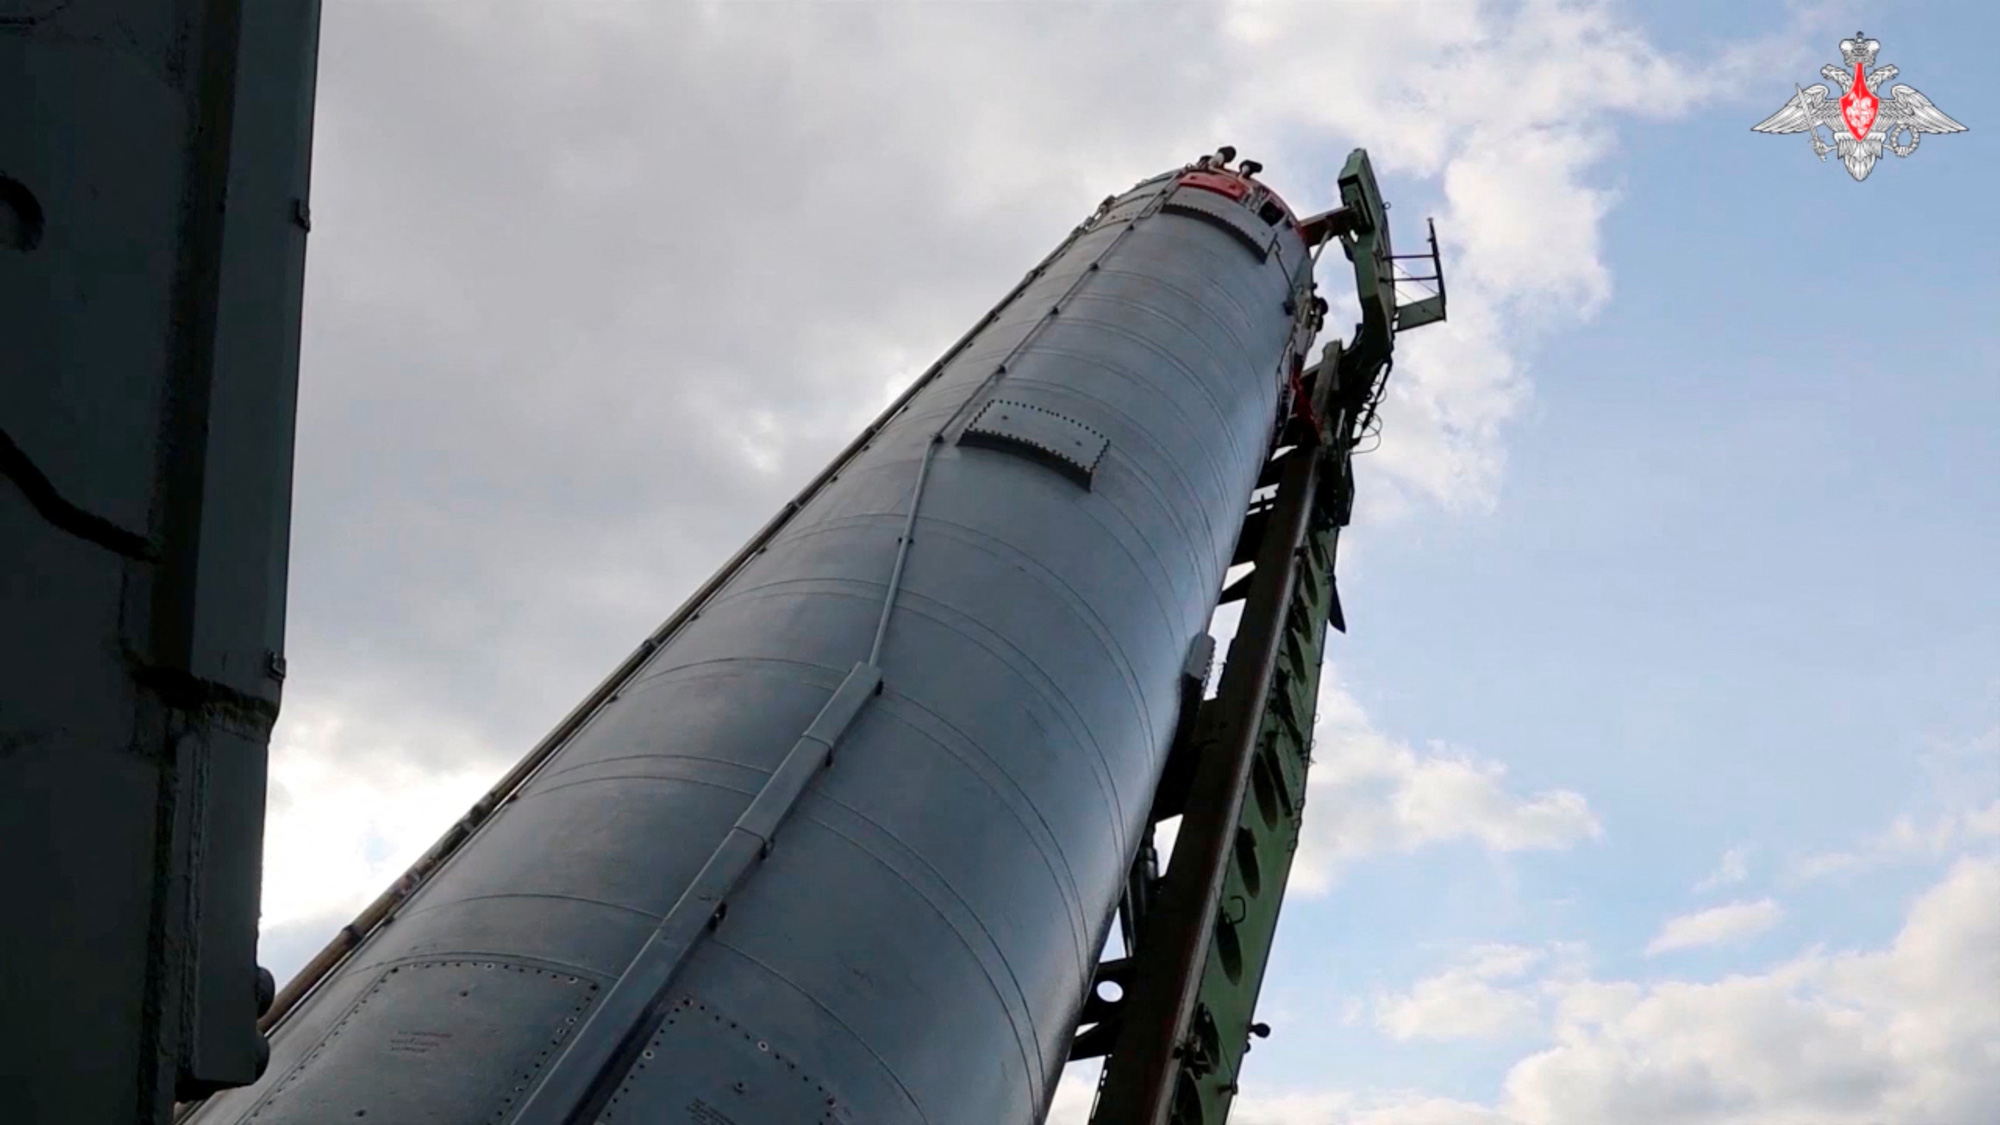 Tên lửa có vũ khí Avangard được đặt vào trụ đỡ - Ảnh: REUTERS